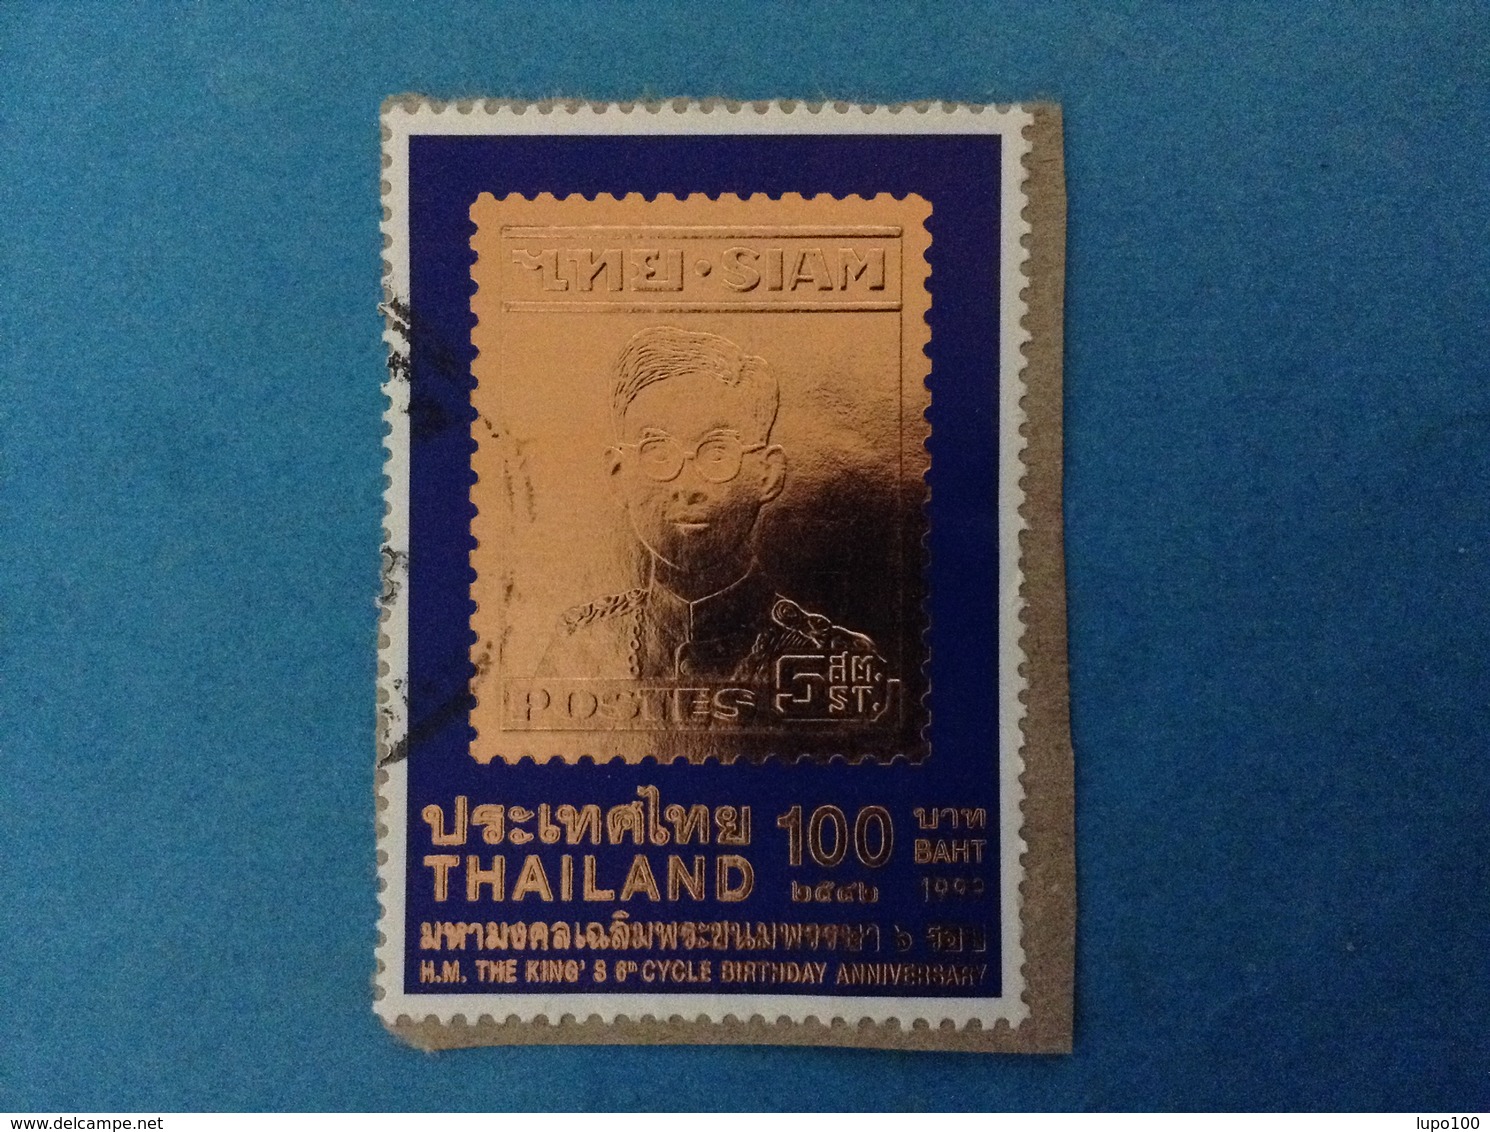 1999 TAILANDIA THAILAND FRANCOBOLLO USATO STAMP USED - ANNIVERSARIO RE 100 - Thailand